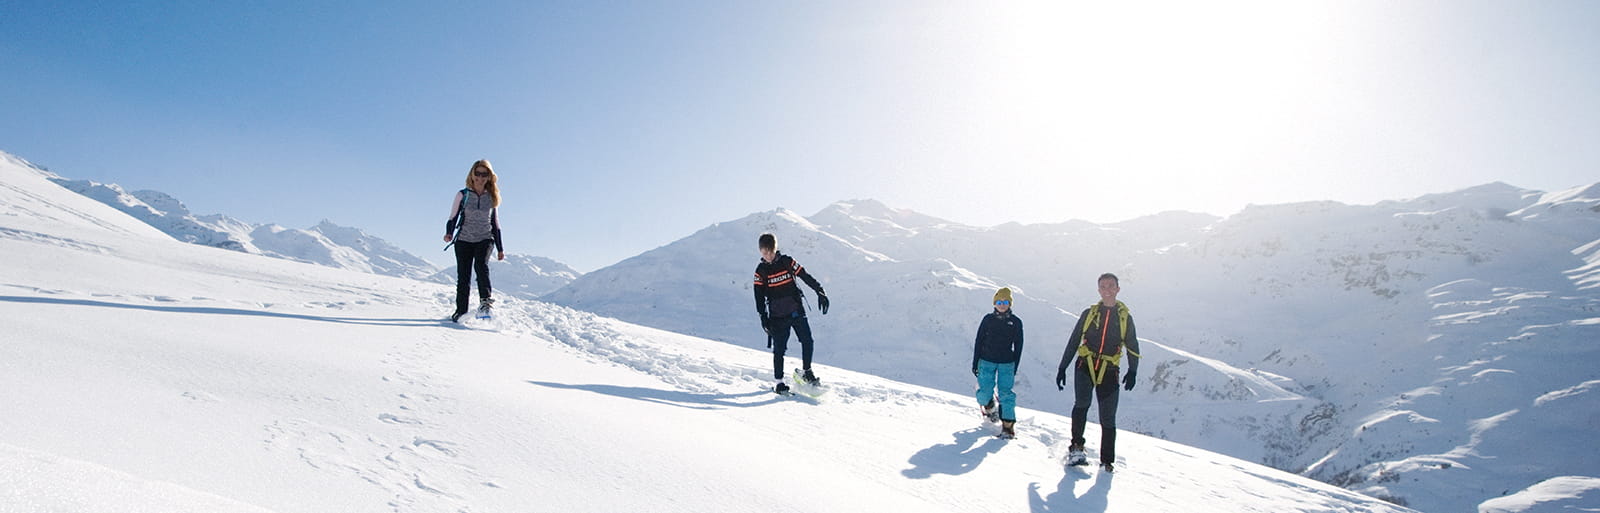 Как хорошо провести отпуск в горах, не катаясь на лыжах?